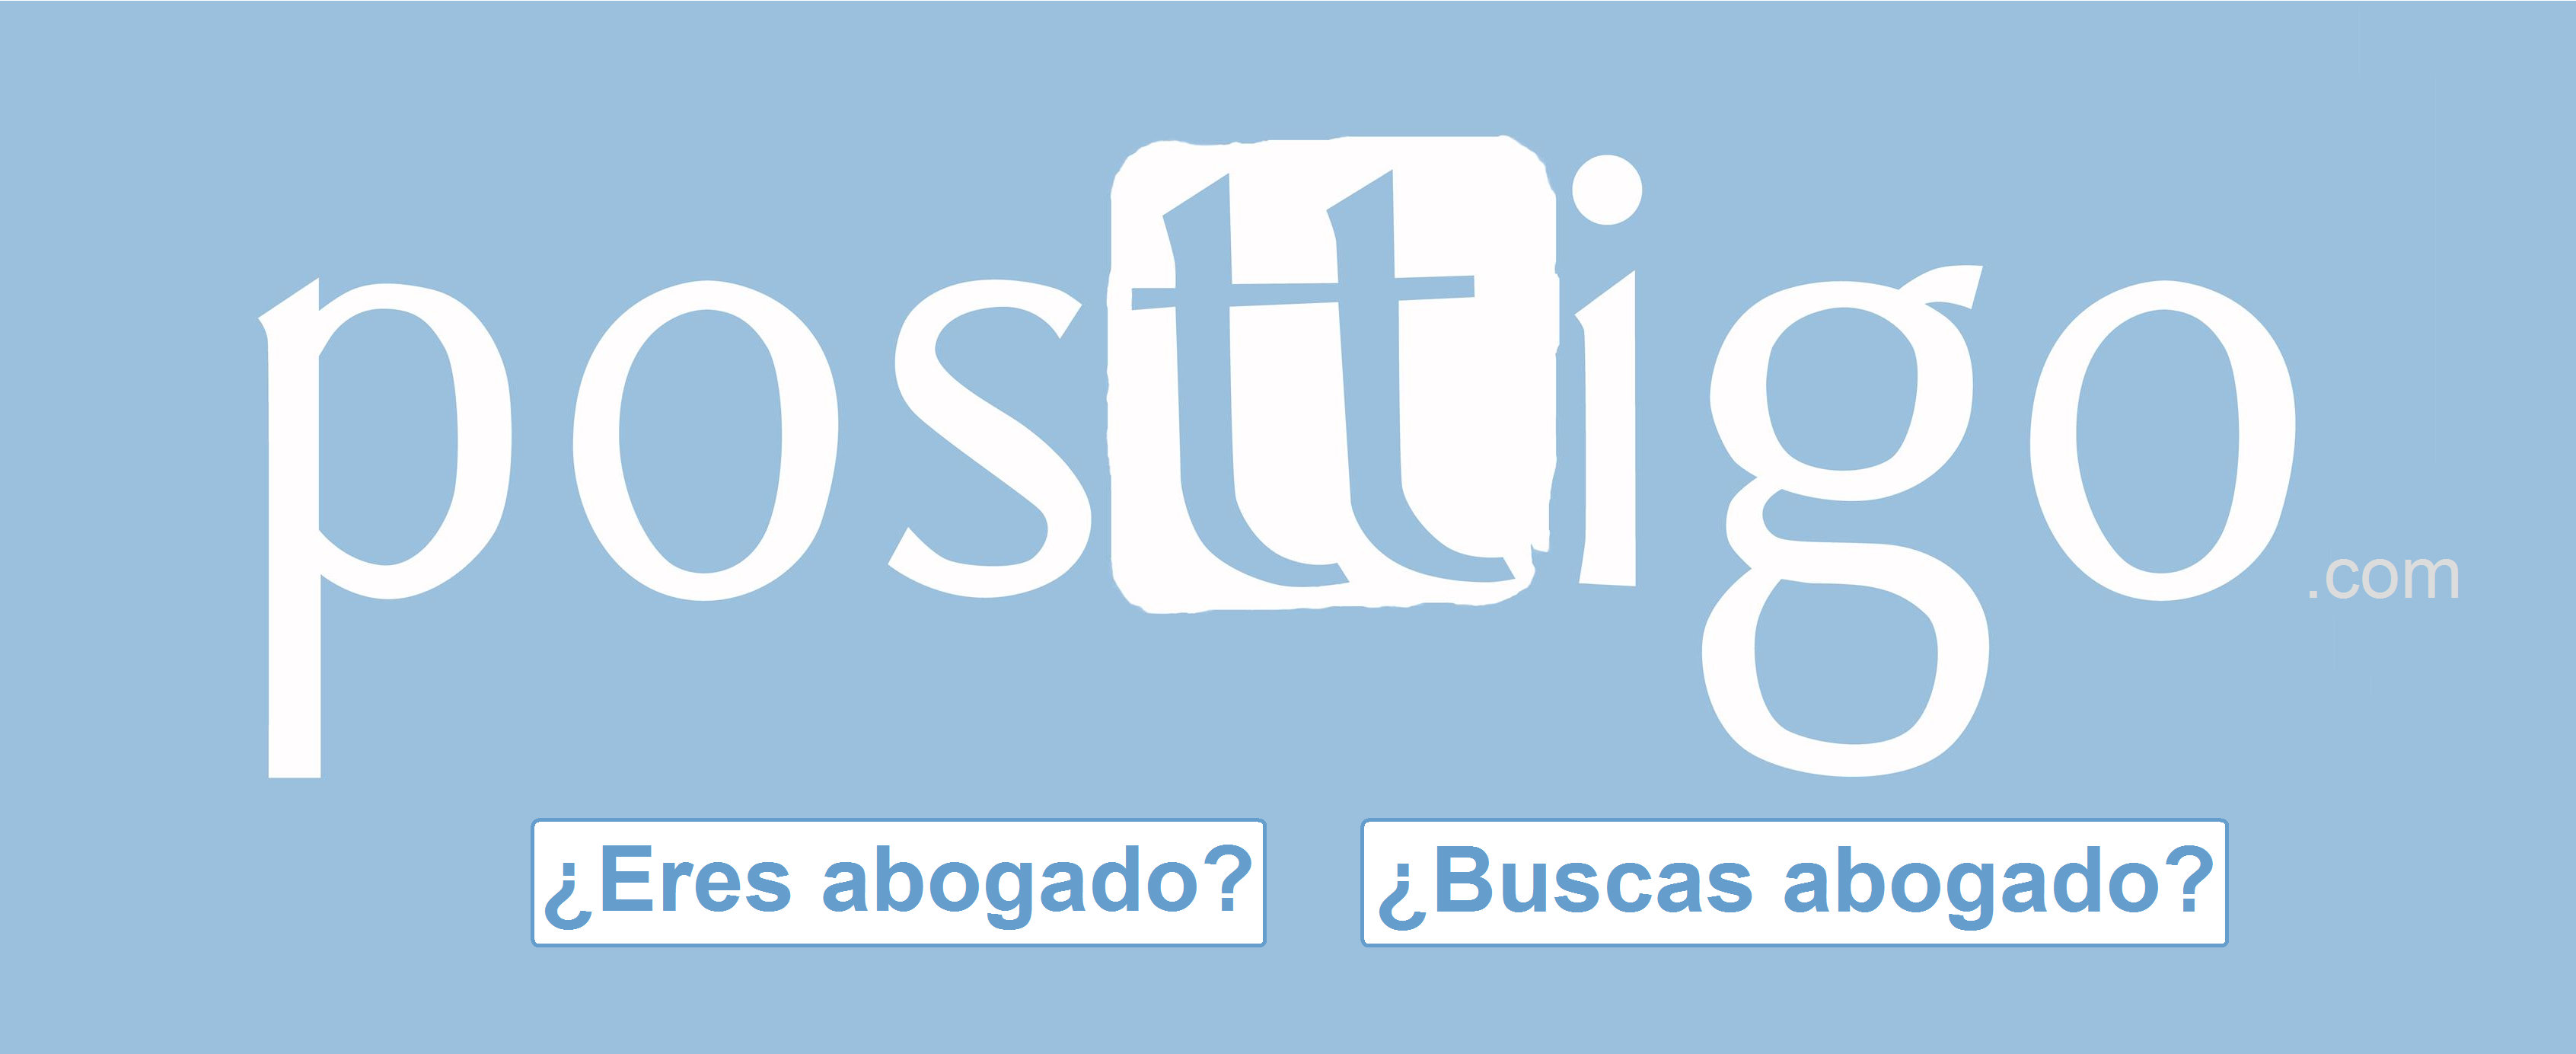 Posttigo.com